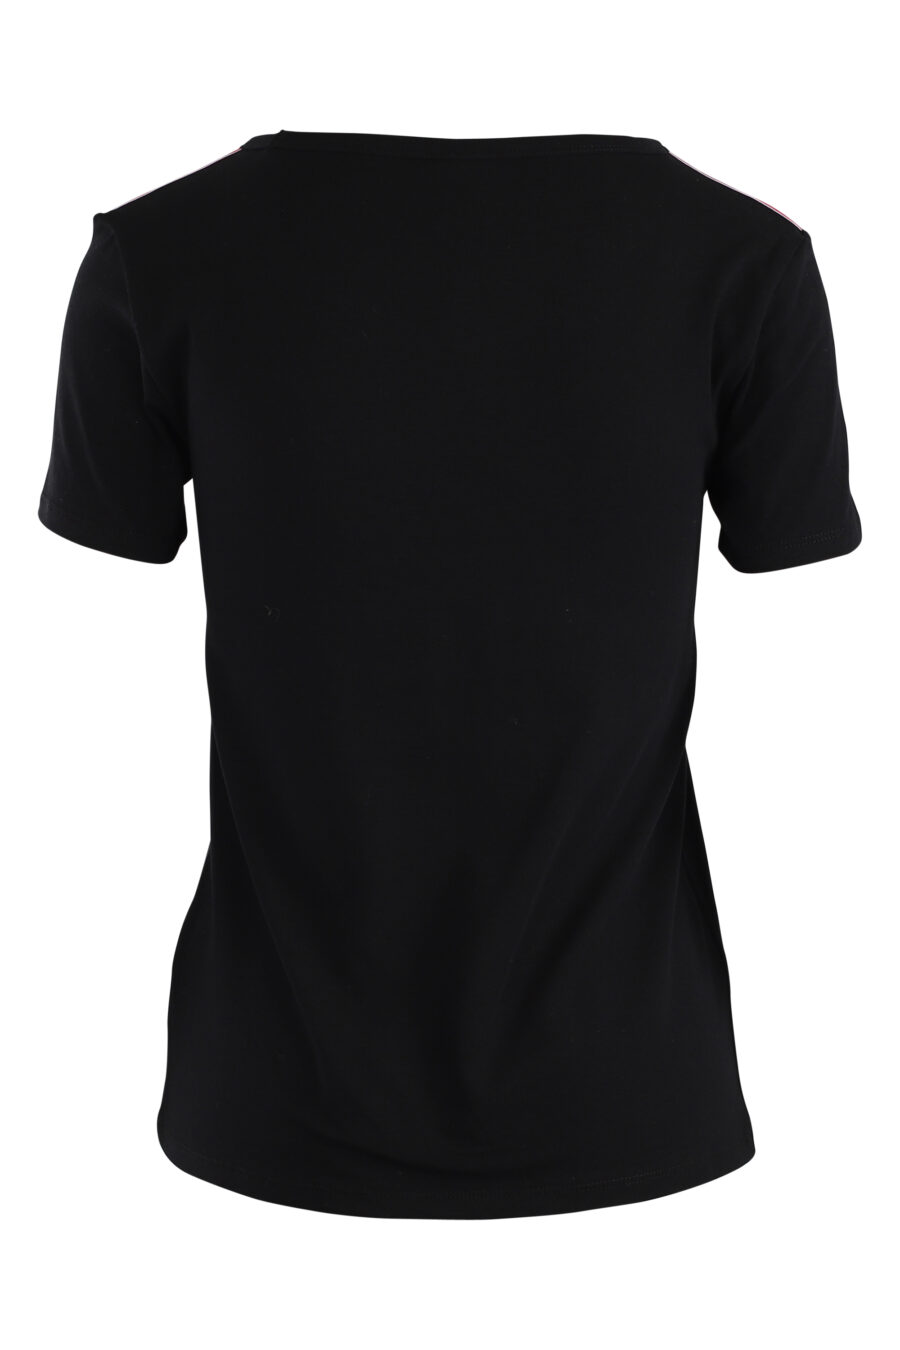 Camiseta negra con logo en cinta en mangas - IMG 5517